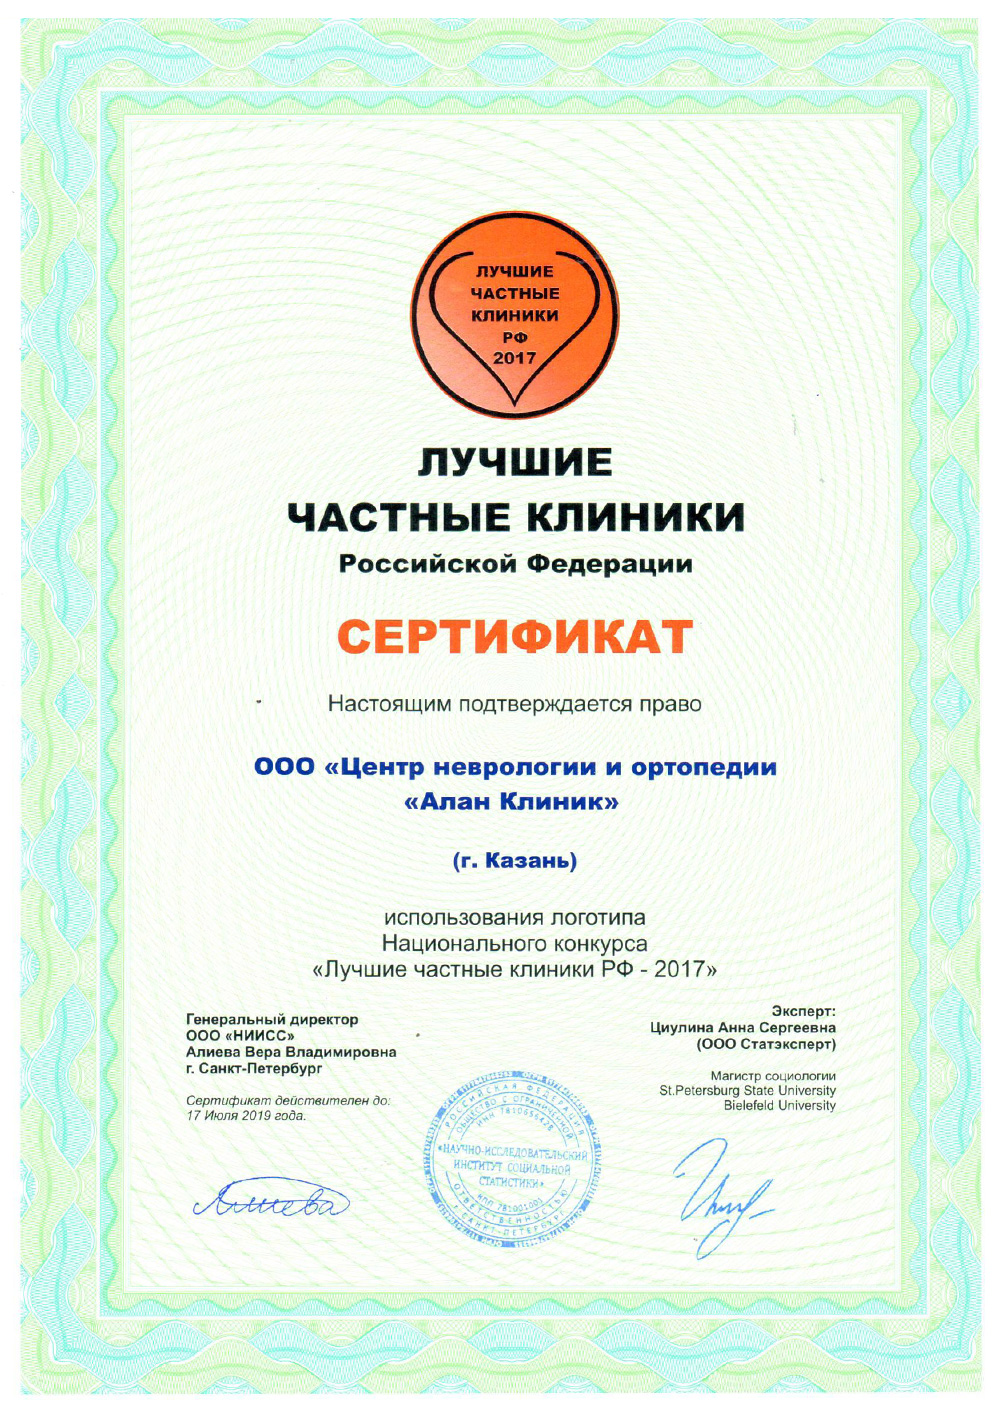 Центр неврологии и ортопедии Алан Клиник в Казани. Сертификат Лучшие частные клиники 2017 года